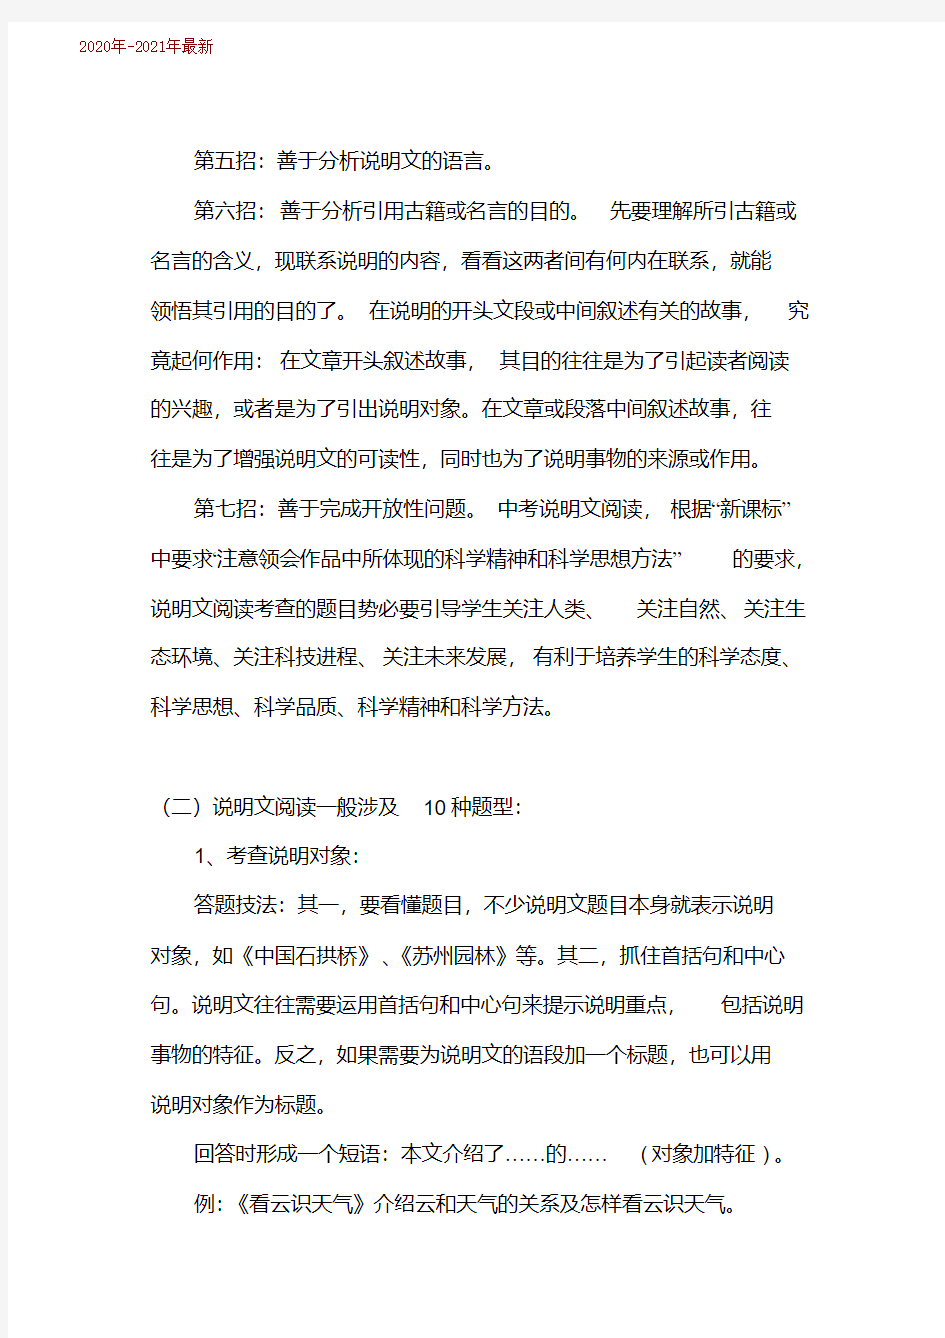 初中语文说明文阅读答题技巧(2020年-2021年)